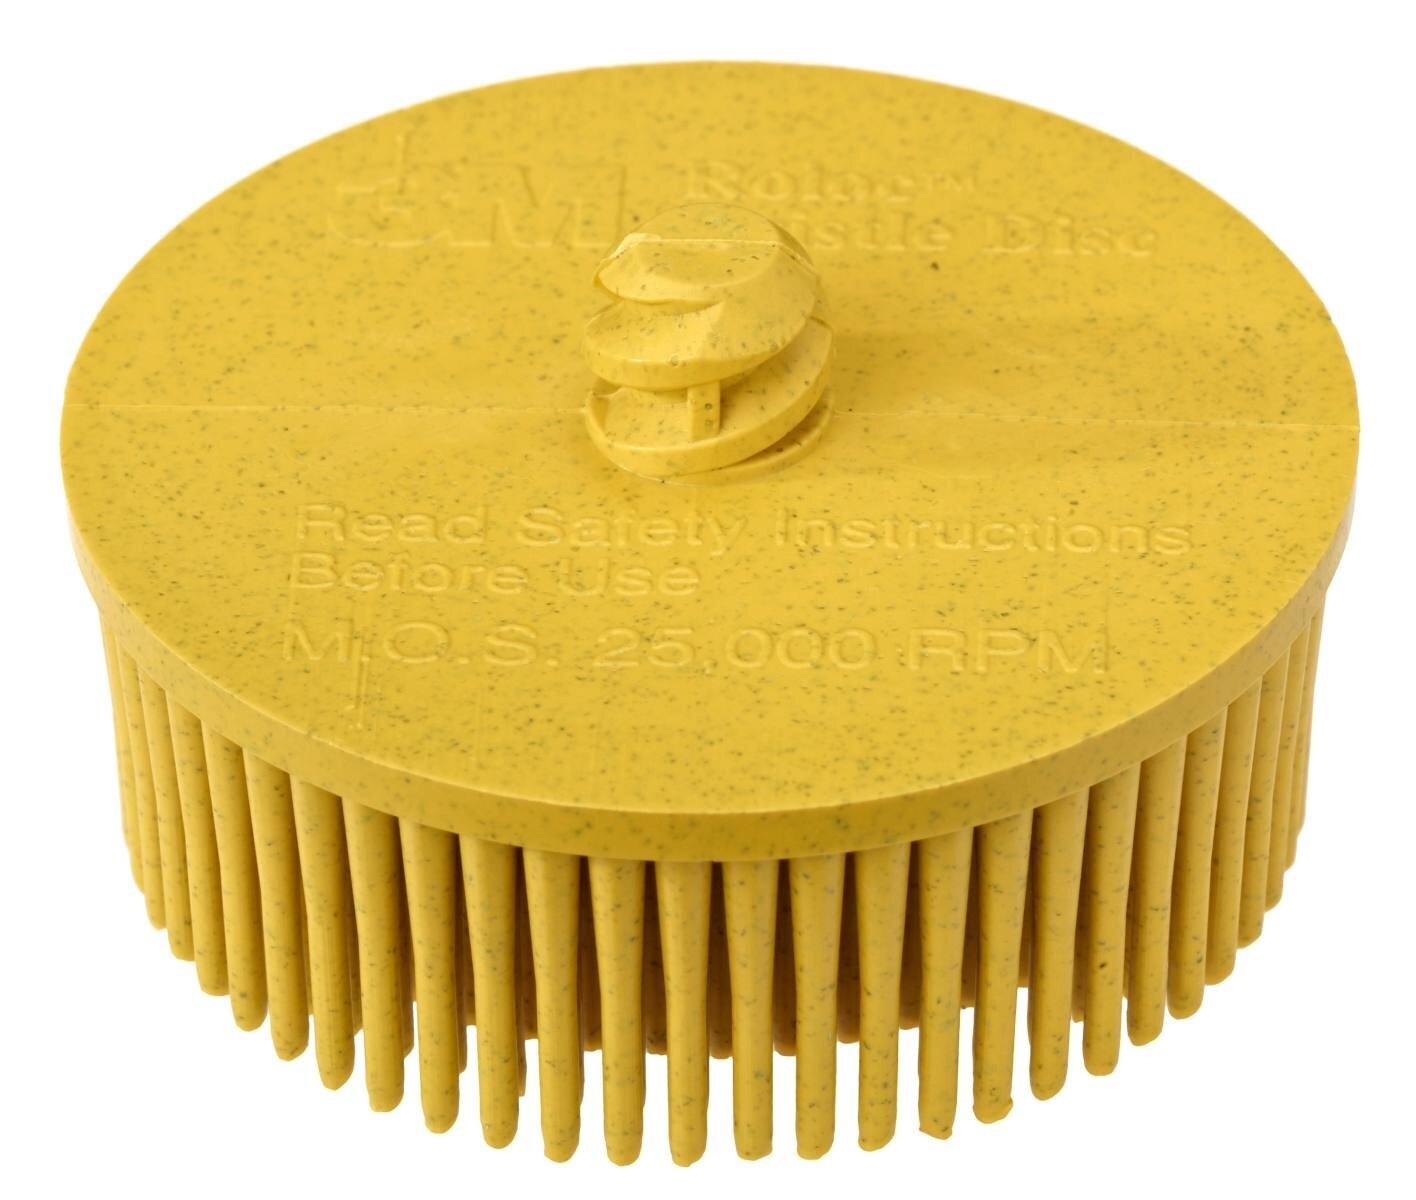 3M Scotch-Brite Roloc Bristle Disc RD-ZB, jaune, 50,8 mm, P80 #07525